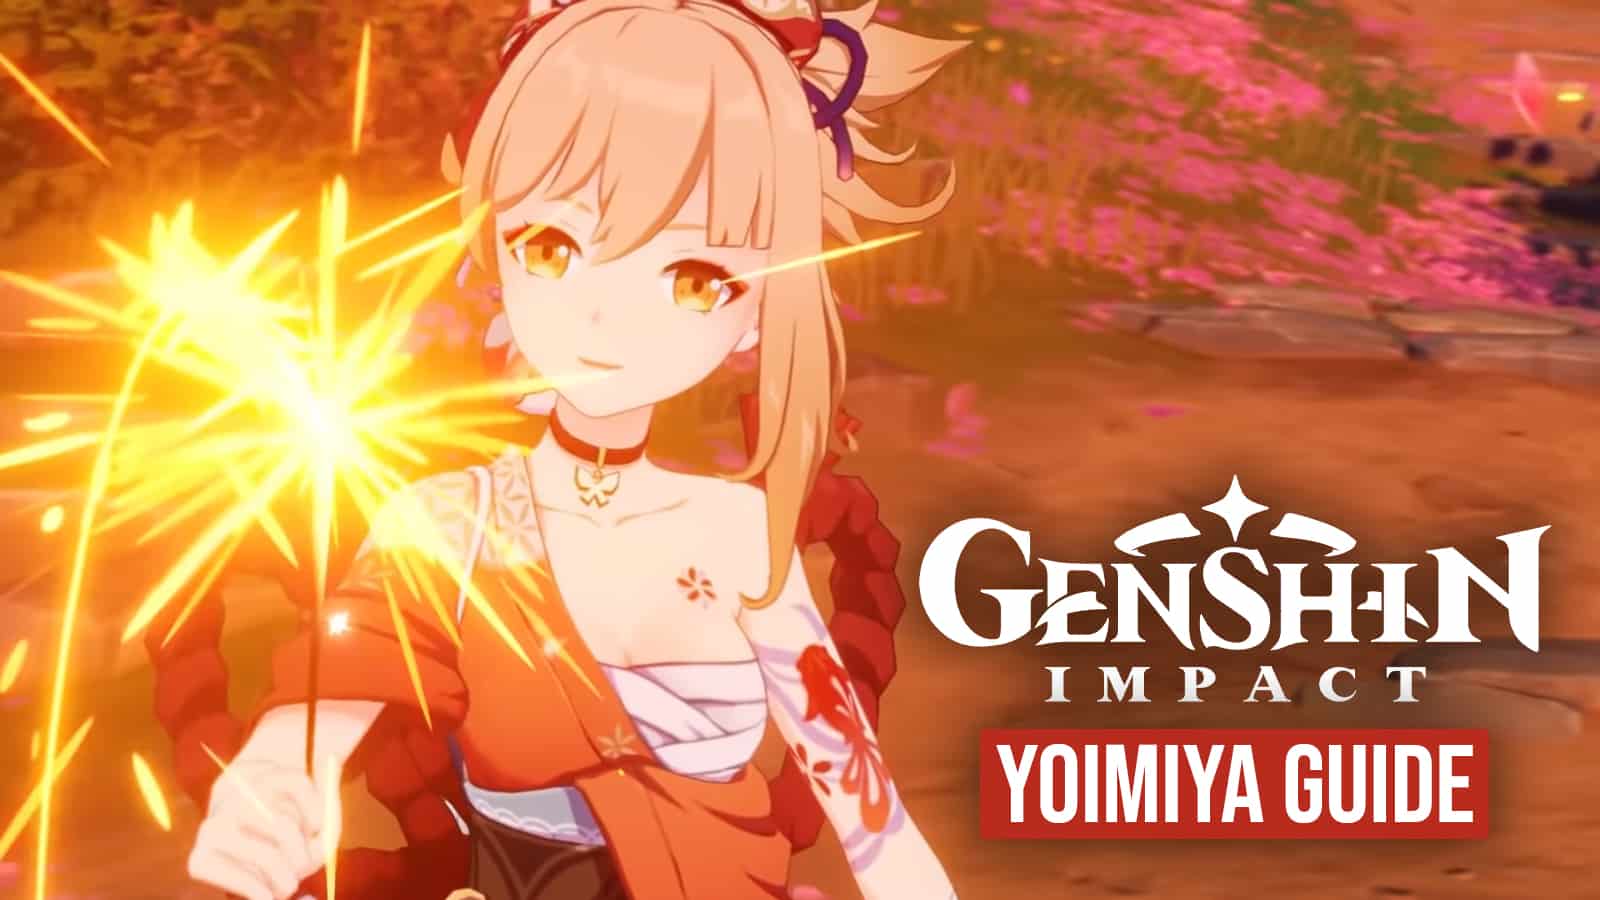 Genshin Impact Yoimiya guide — Weapons, artifacts, and talents